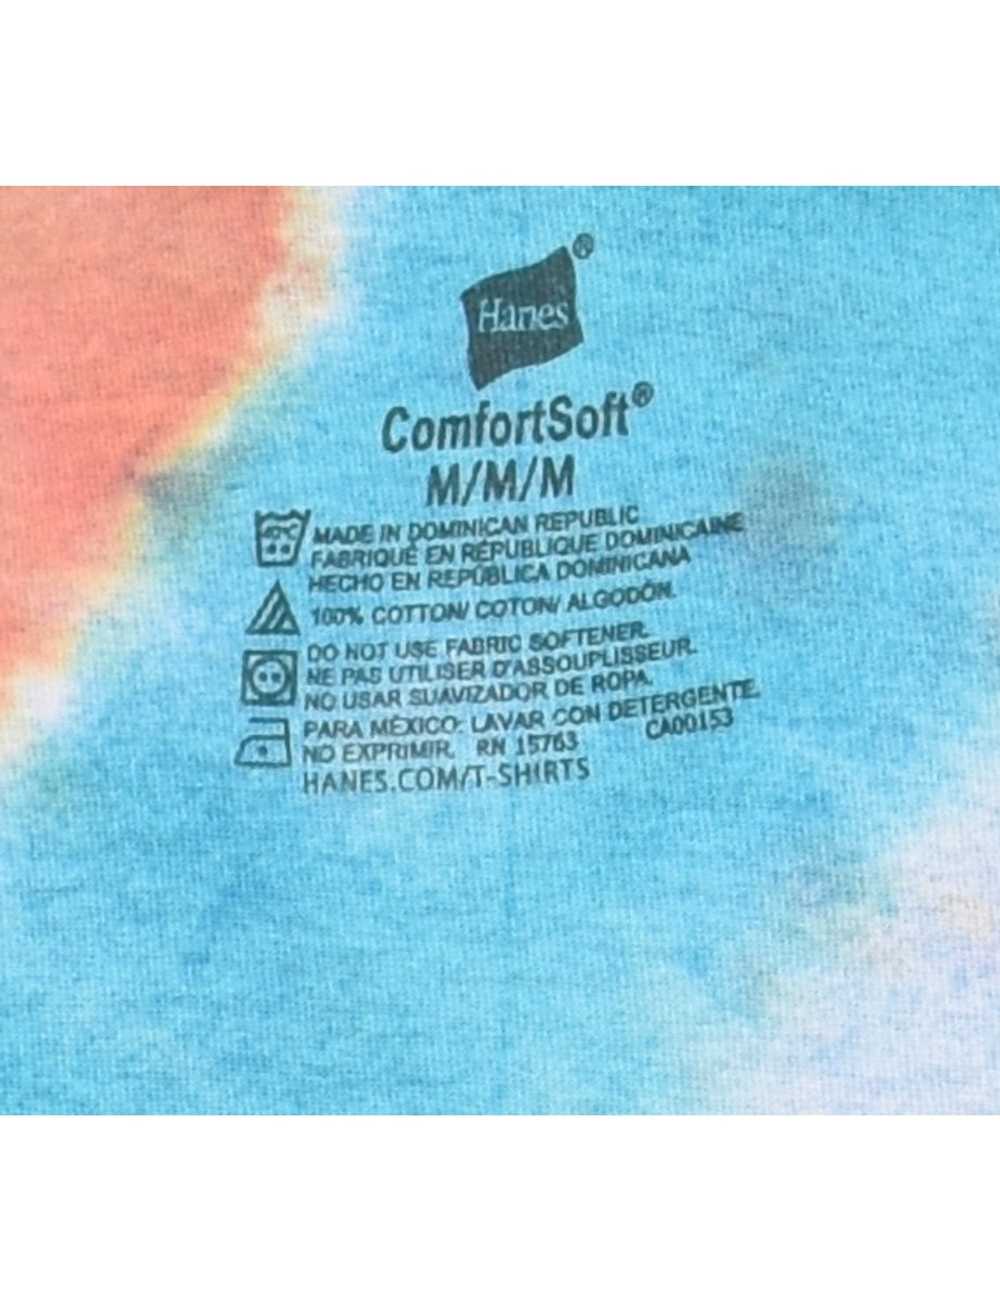 Multi-colour Tie Dye T-shirt - M - image 4